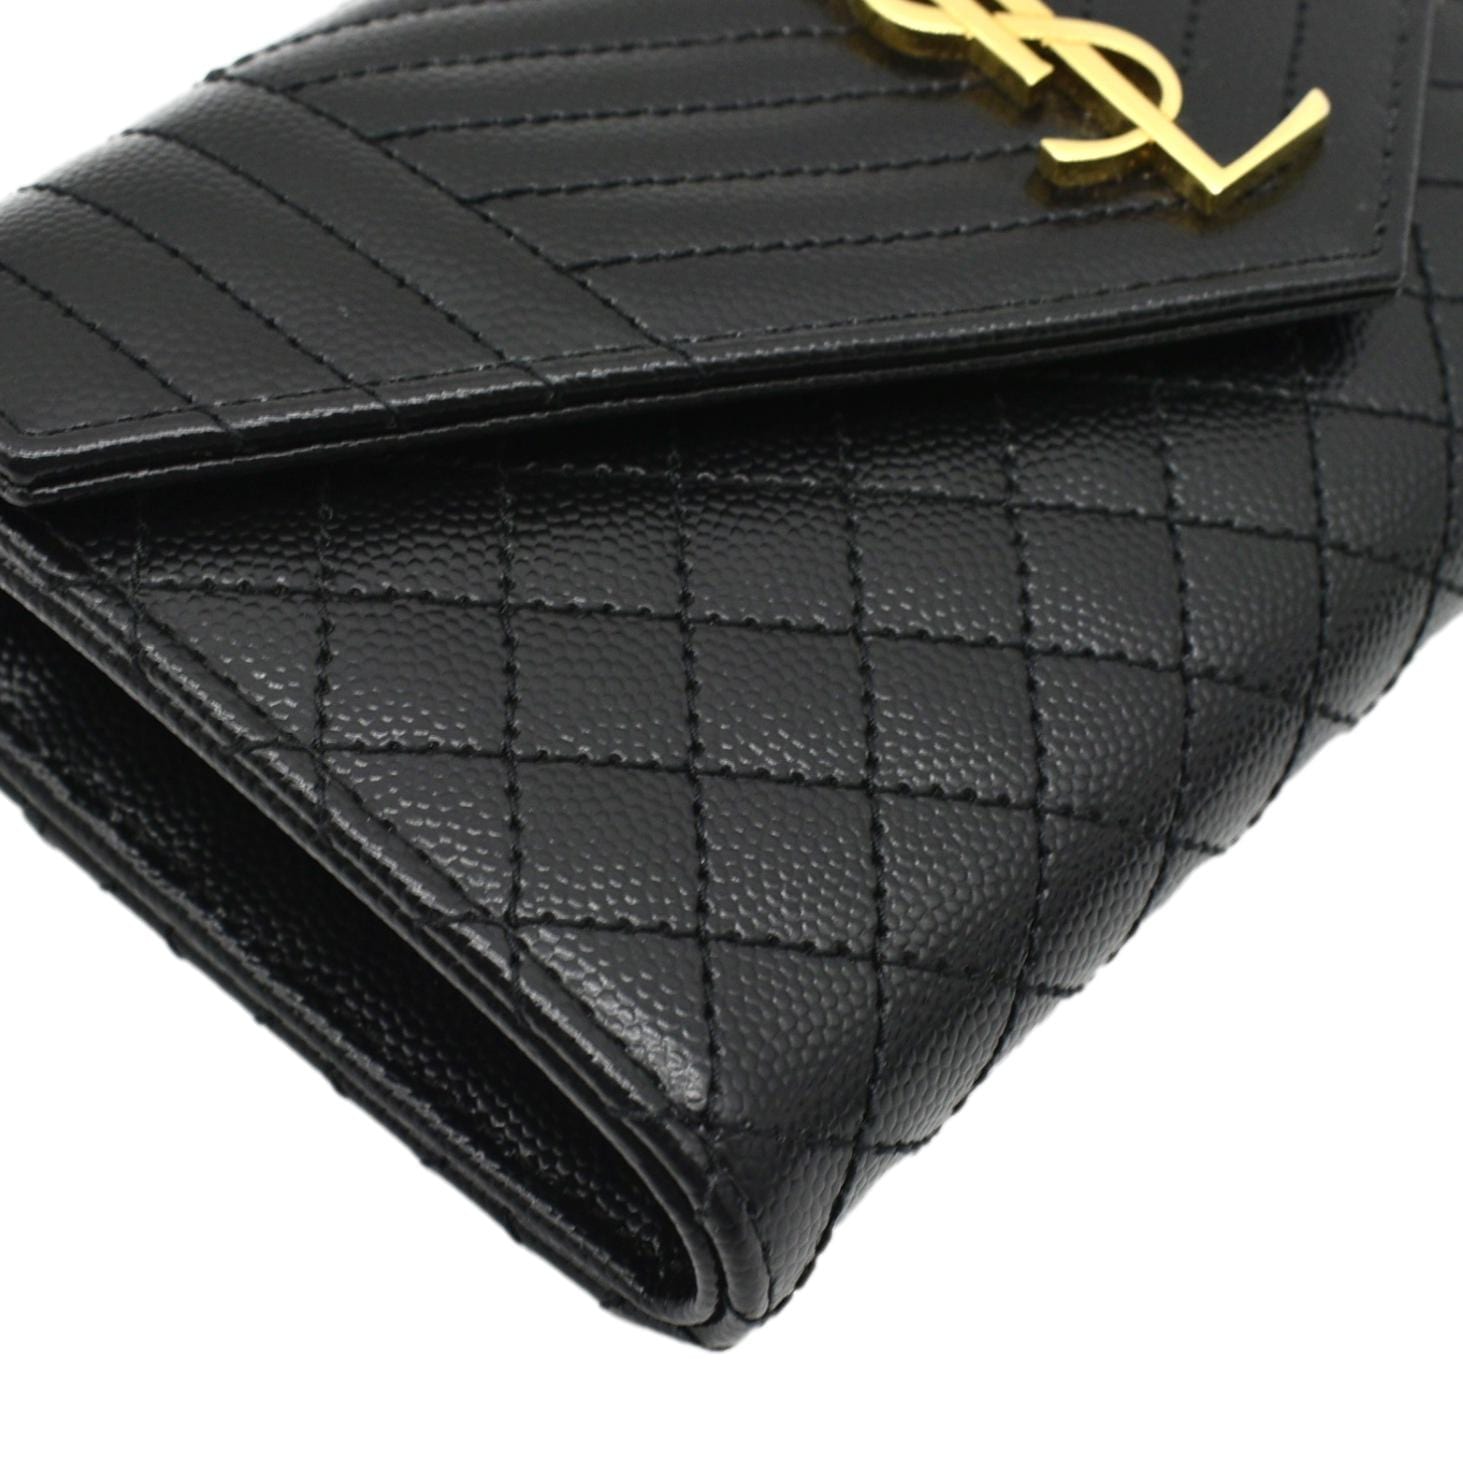 Monogram Matelassé Leather Wallet